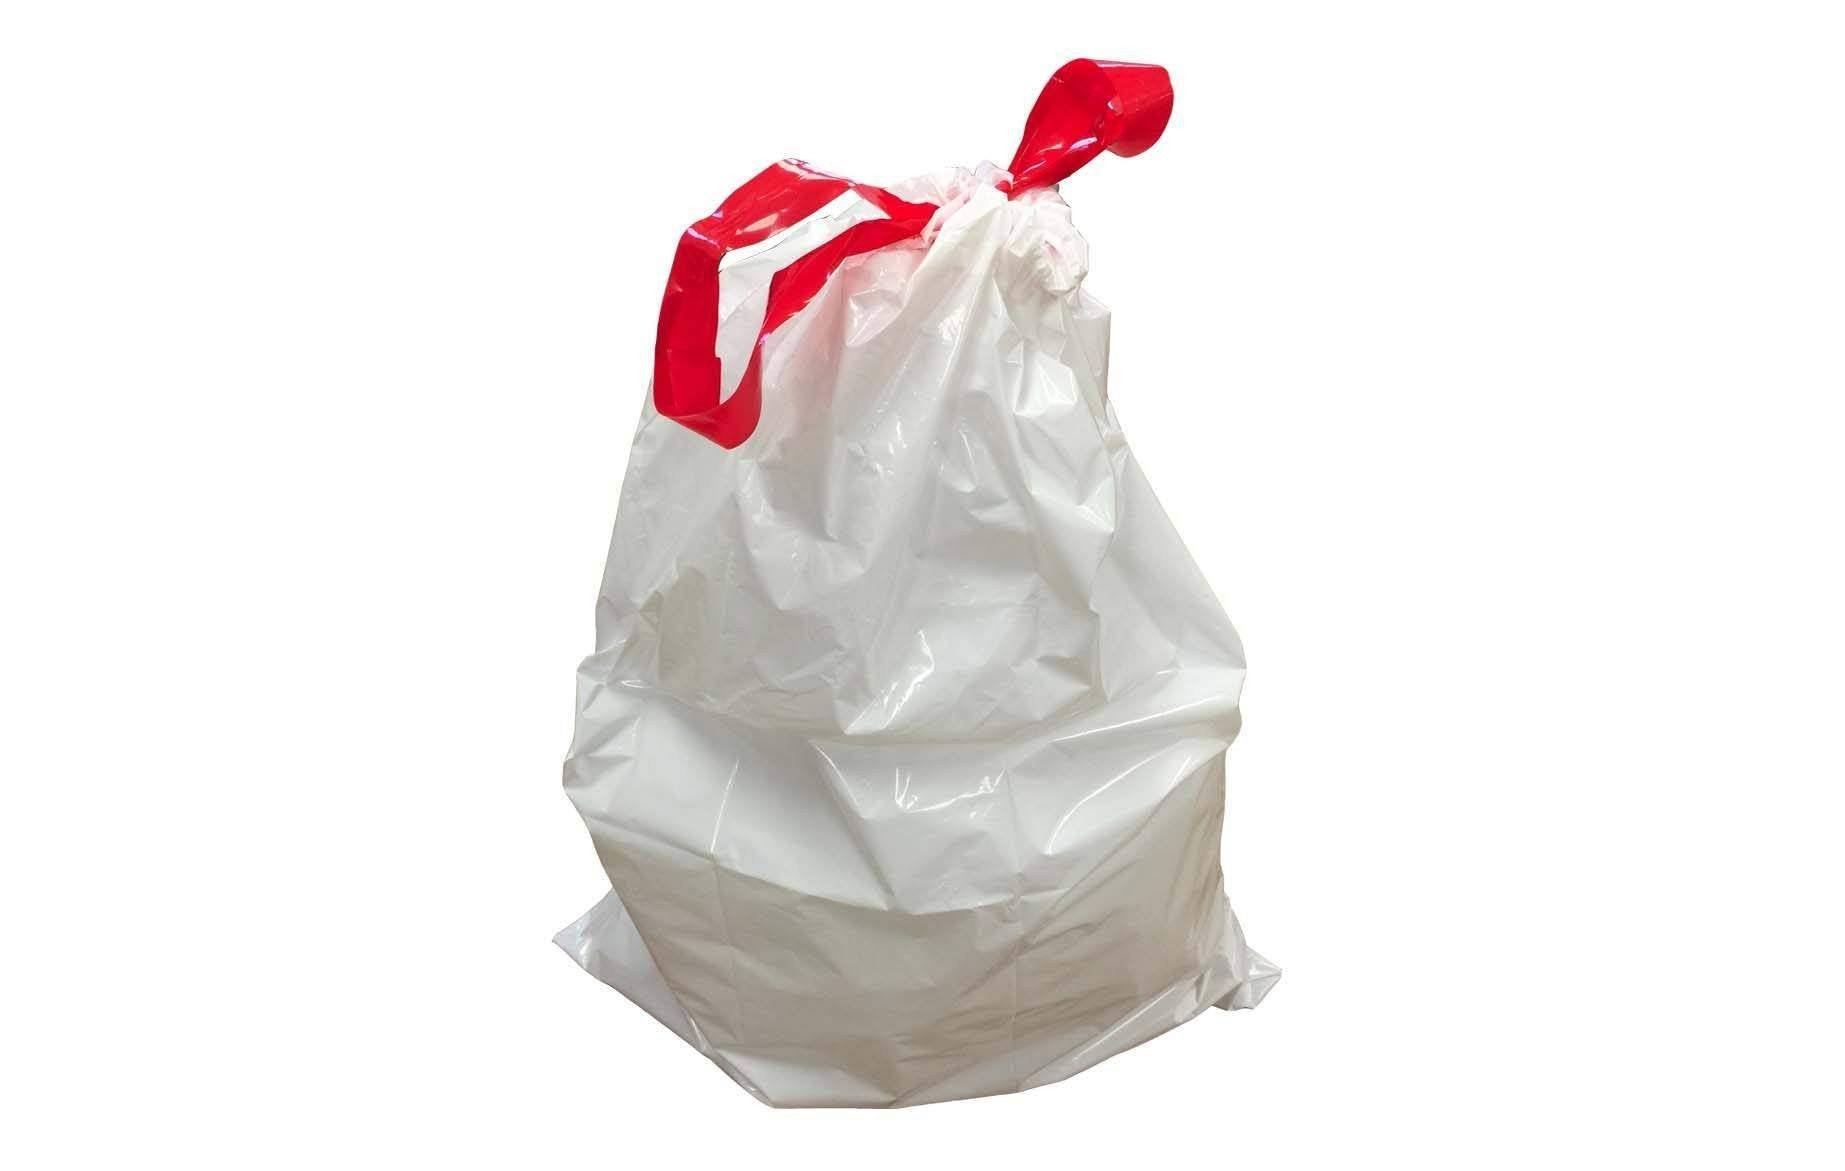 Repl. Simplehuman B-Style 6L, 1.6 Gallon Garbage Bag (50PK)